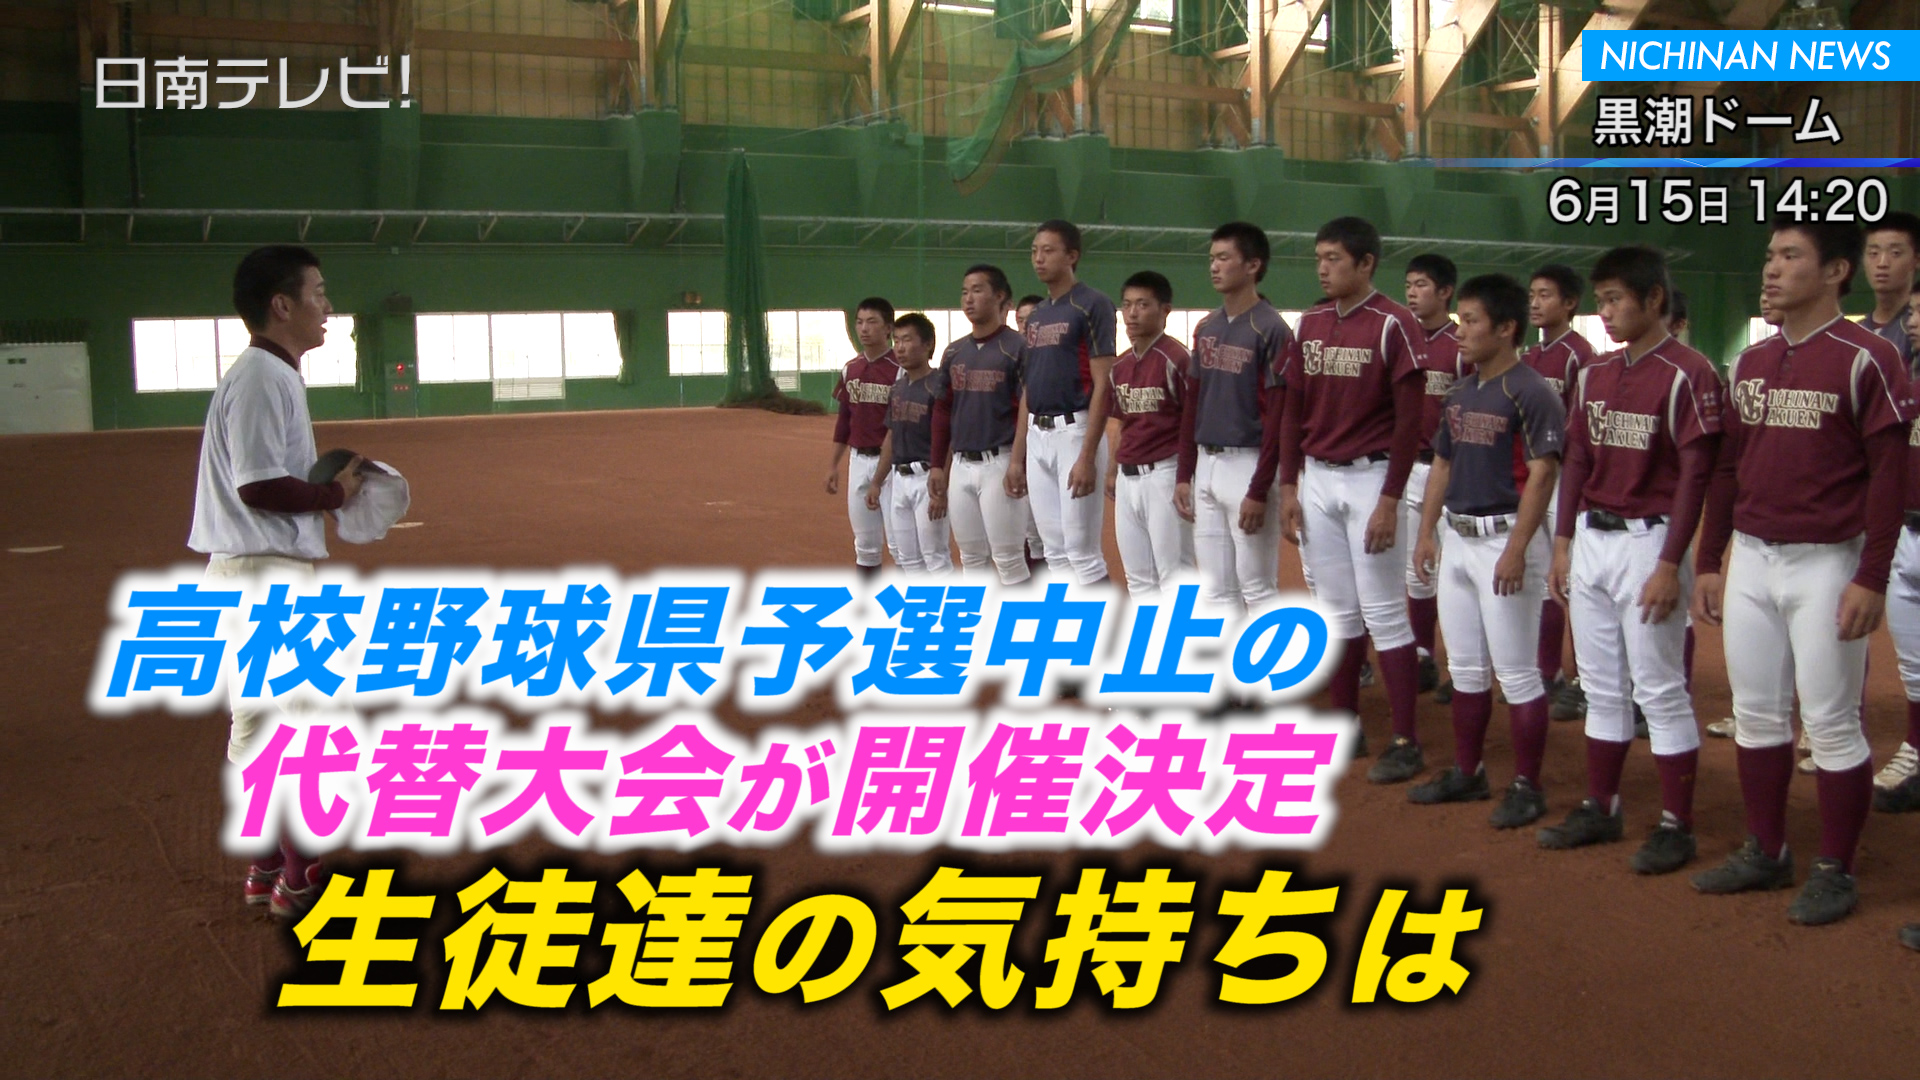 高校野球県予選の代替大会が開催決定 日南テレビ 公式